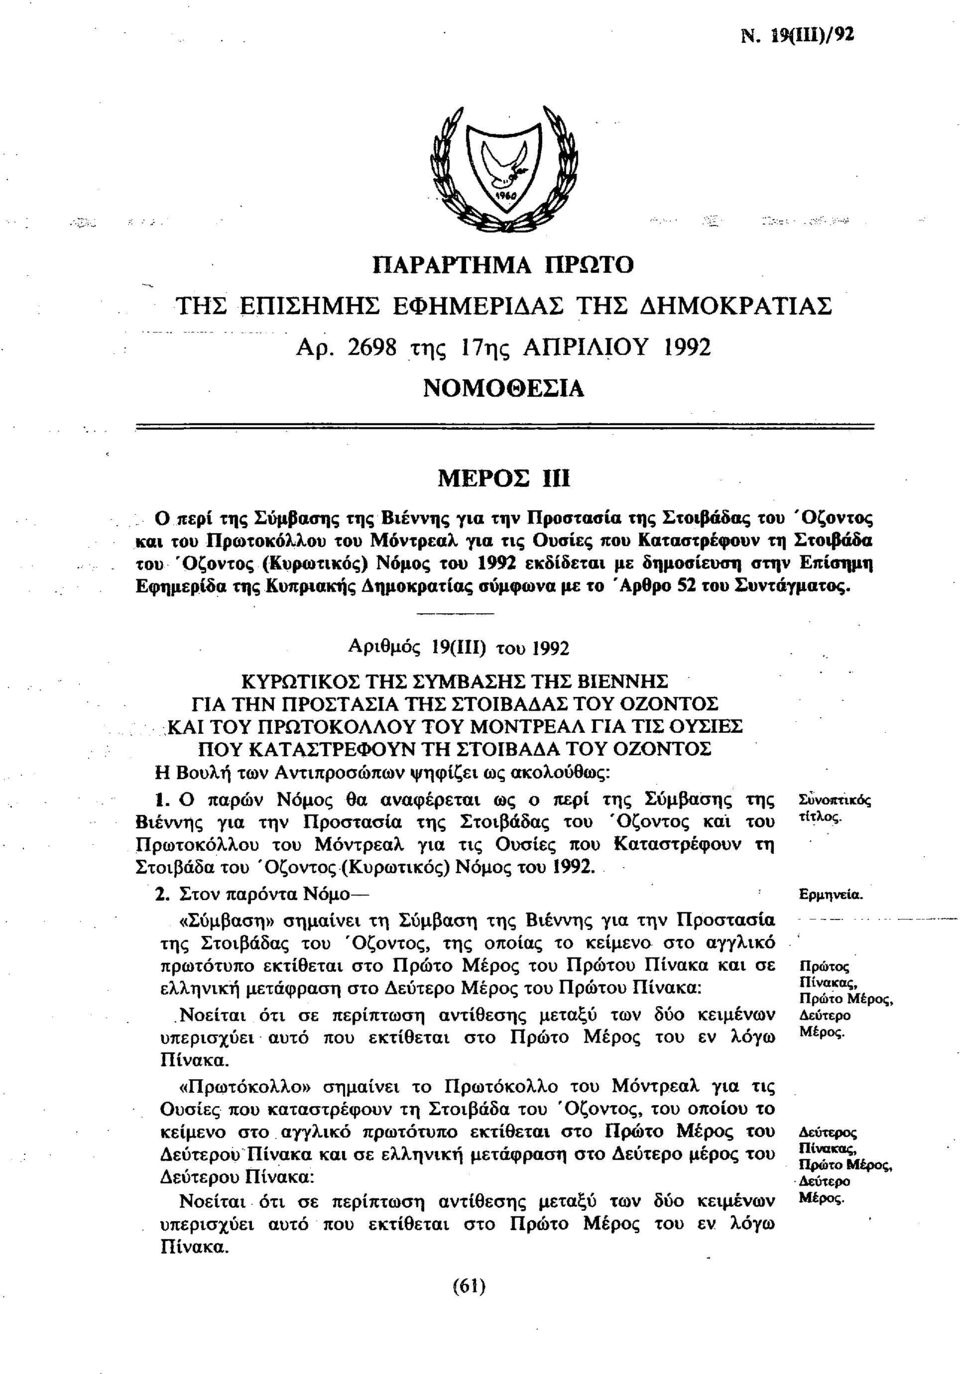 του Όζοντος (Κυρωτικός) Νόμος του 1992 εκδίδεται με δημοσίευση στην Επίσημη Εφημερίδα της Κυπριακής Δημοκρατίας σύμφωνα με το Άρθρο 52 του Συντάγματος.